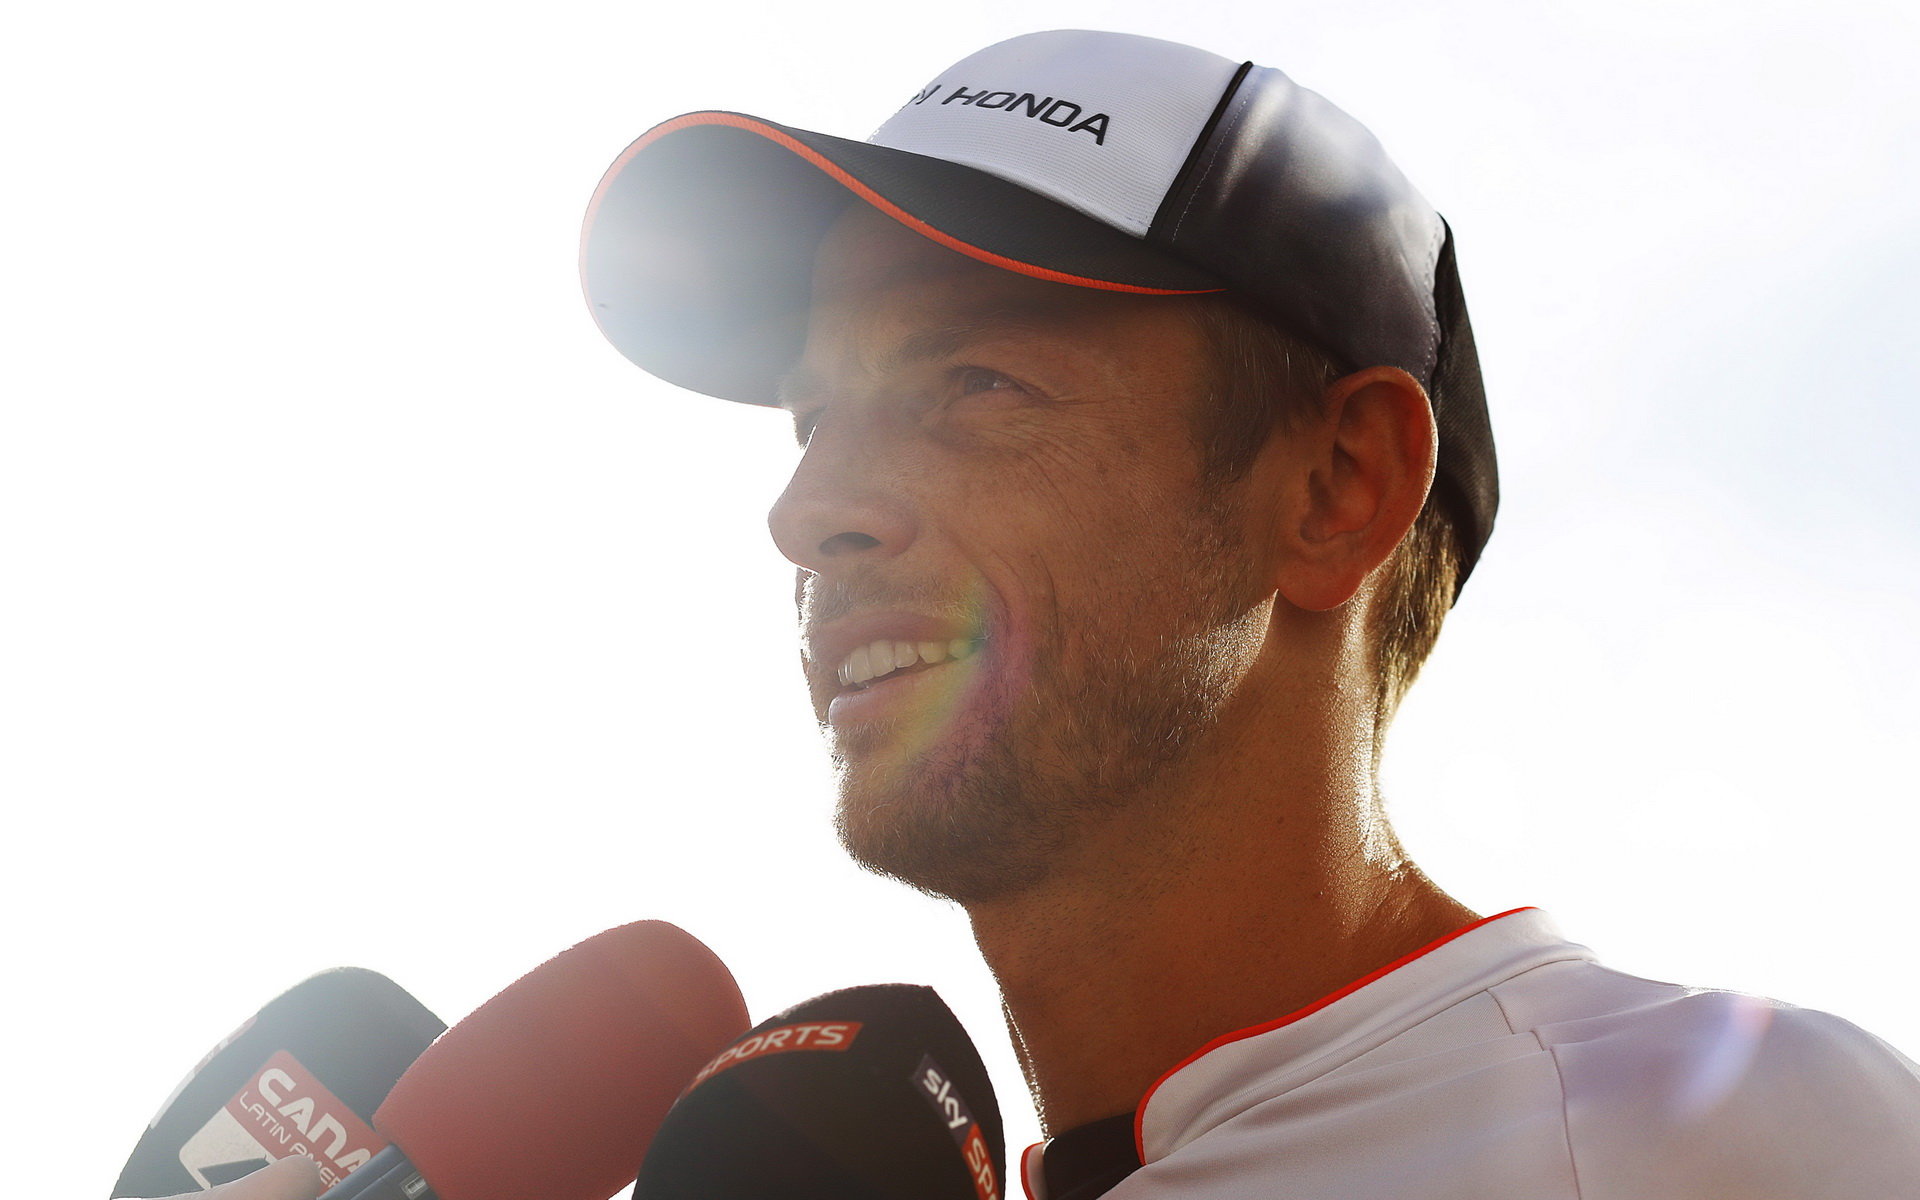 Jenson Button doufá, že si Verstappen z poslední zkušenosti vezme ponaučení